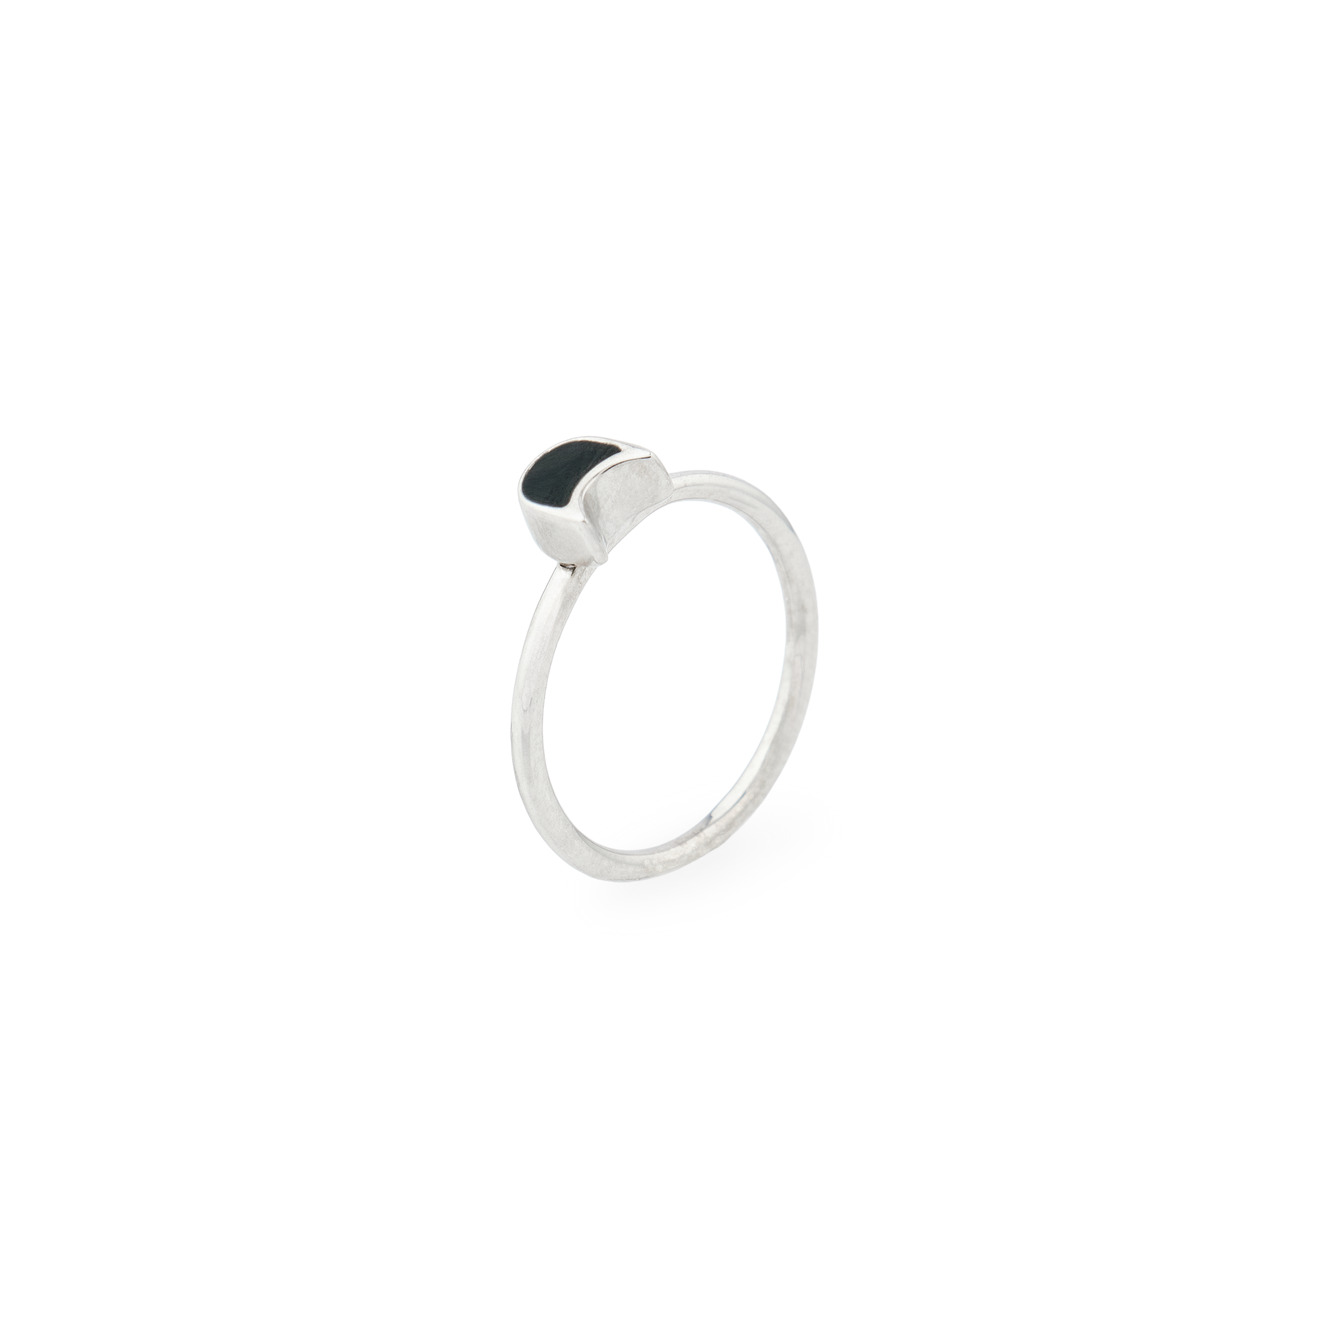 УРА jewelry Кольцо-котенок из серебра с черной эмалью ура jewelry кольцо из серебра с розовым сердцем эмаль